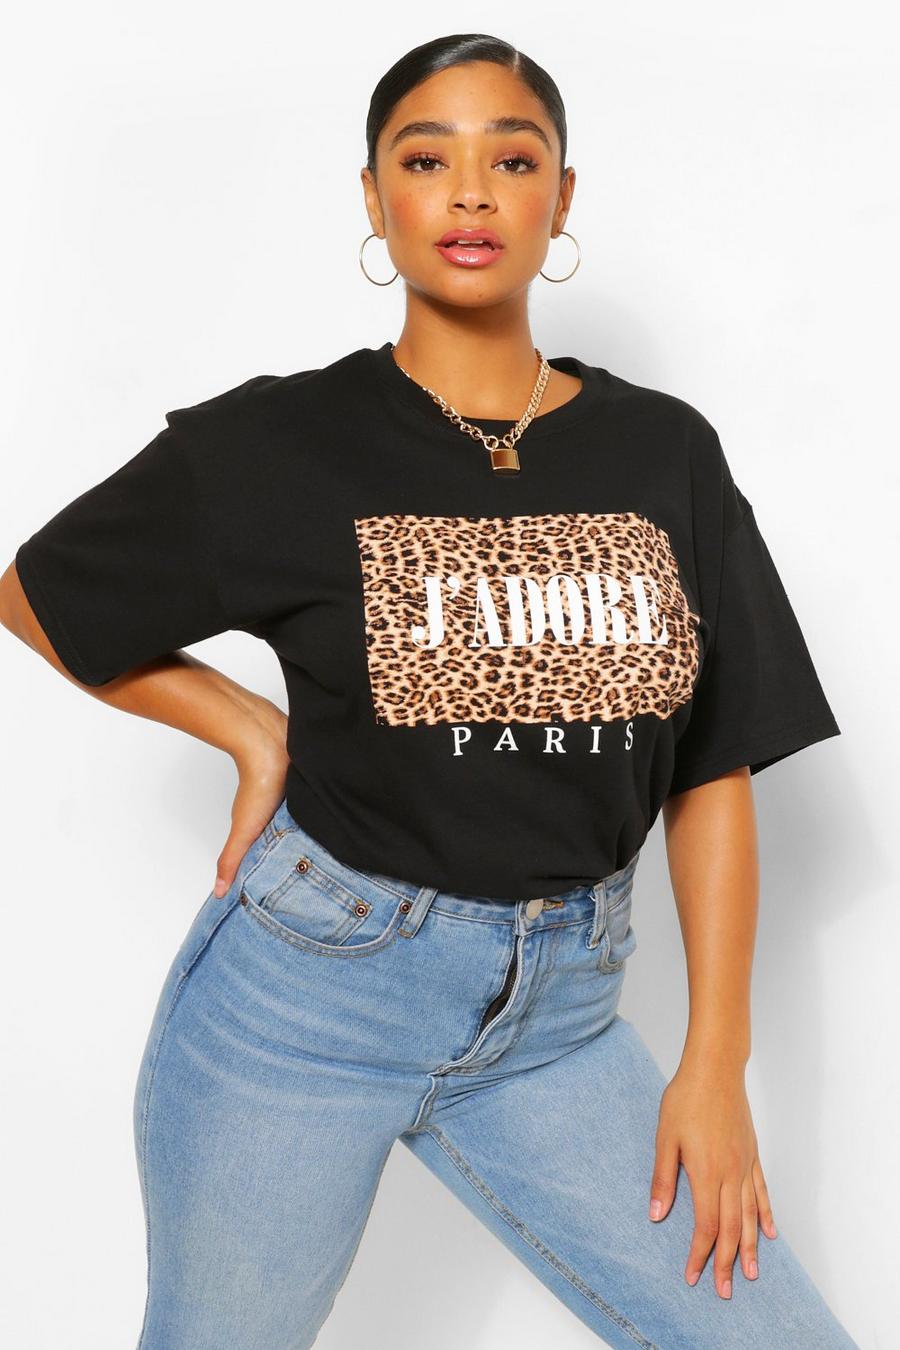 Tshirt Hey Ladies Fitted Tshirt,Leopard Print Slogan Womens T Shirt